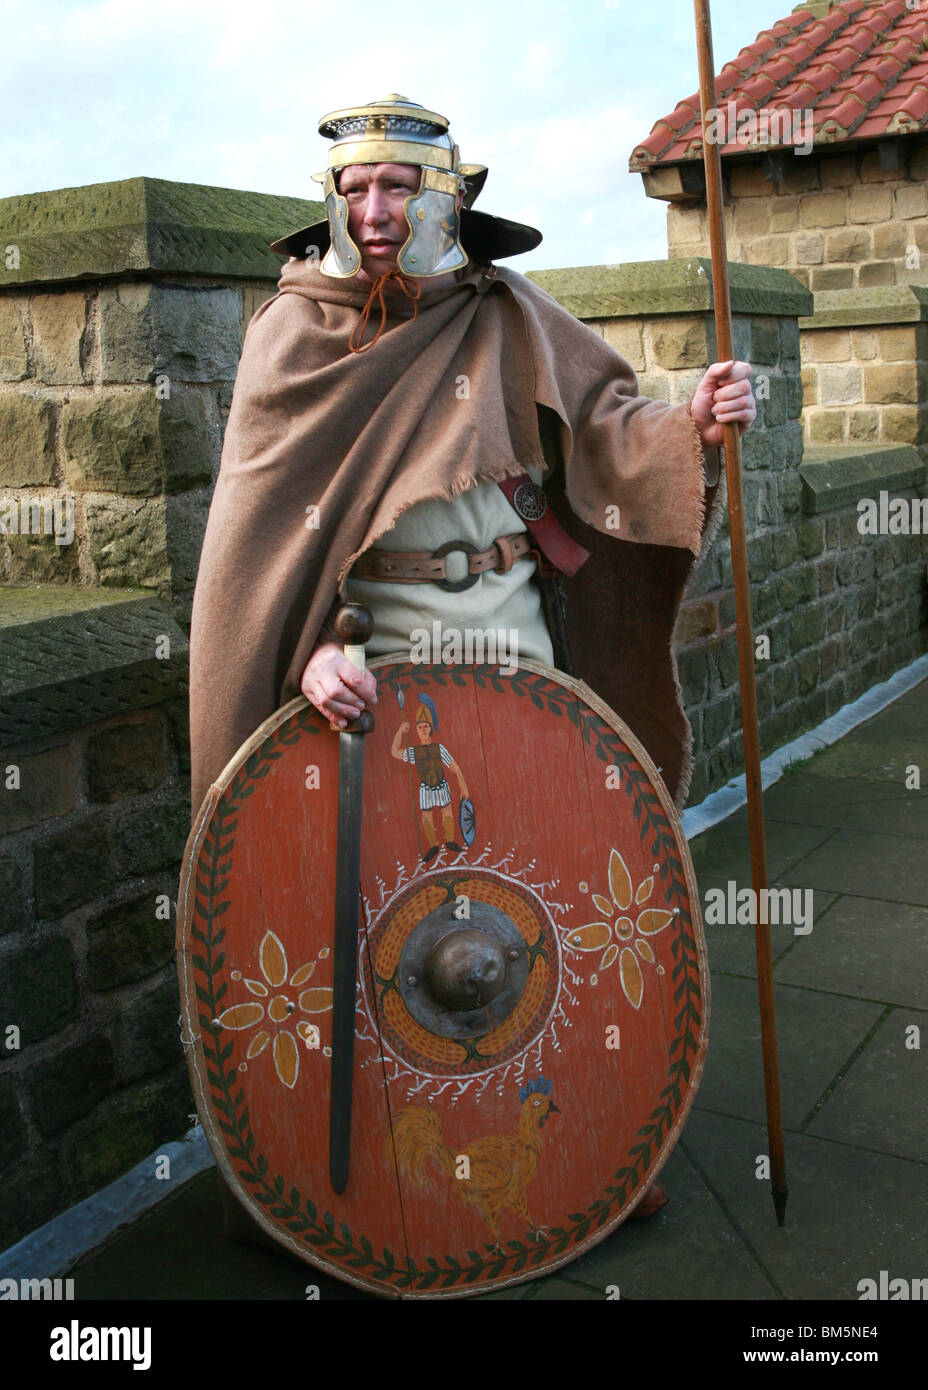 Römischer Soldat Kostüm in Position mit Schild und Speer Helm Farbe  gekleidet Stockfotografie - Alamy